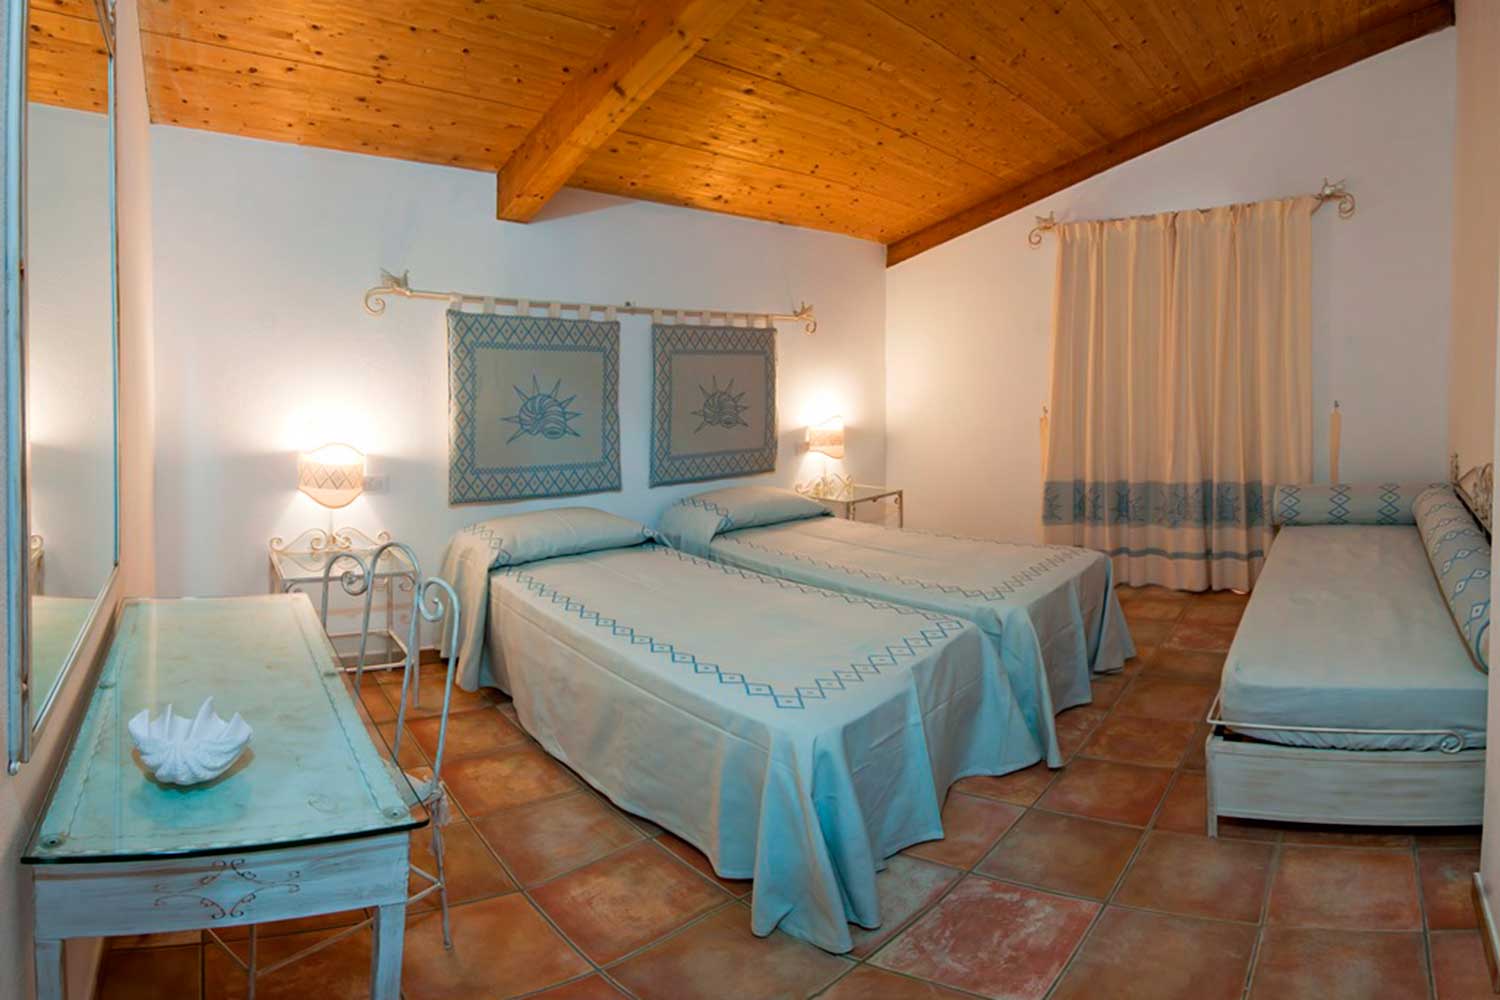 Esempio di una camera tripla del Villaggio Marina Rey di Costa Rei, finemente arredata in stile sardo.